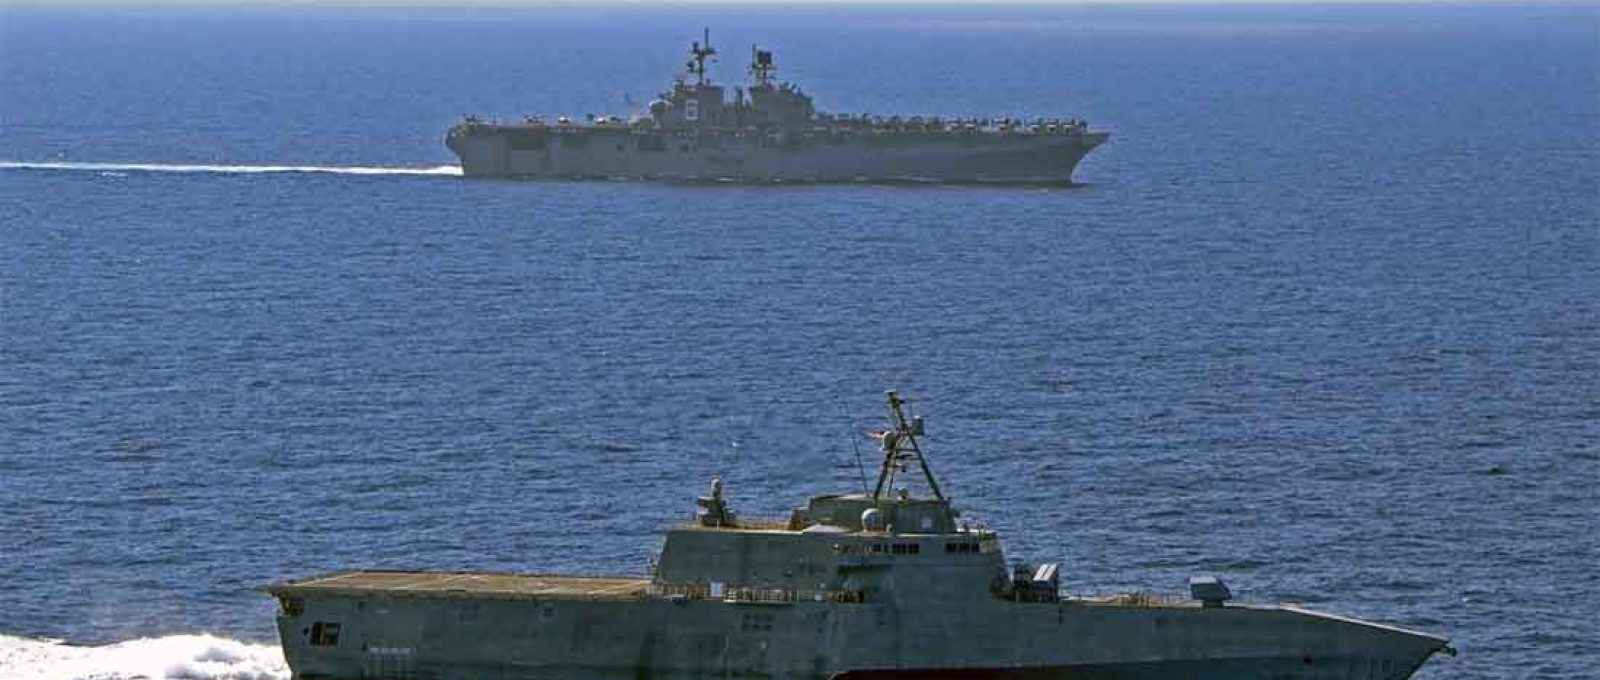 O navio de assalto anfíbio USS America navega com o navio de combate litorâneo USS Gabrielle Giffords em 13 de março de 2020, no Mar do Sul da China (Foto: US Navy).